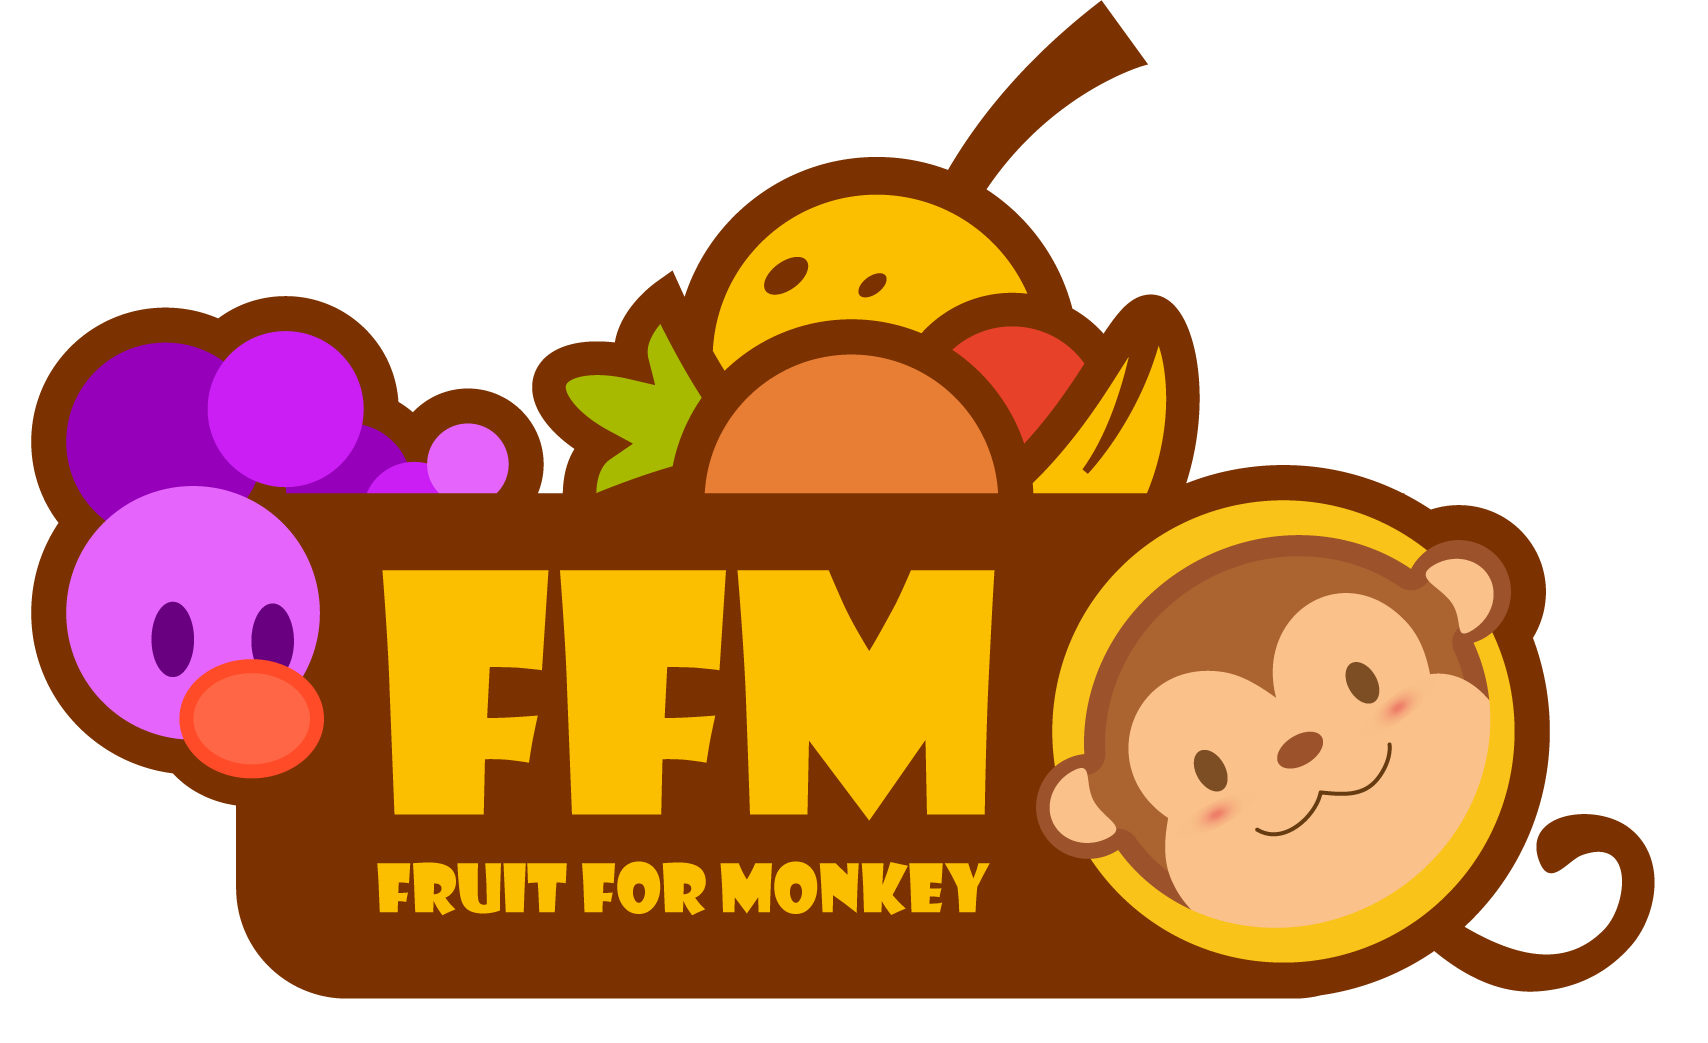 FFM - Fruit For Monkey